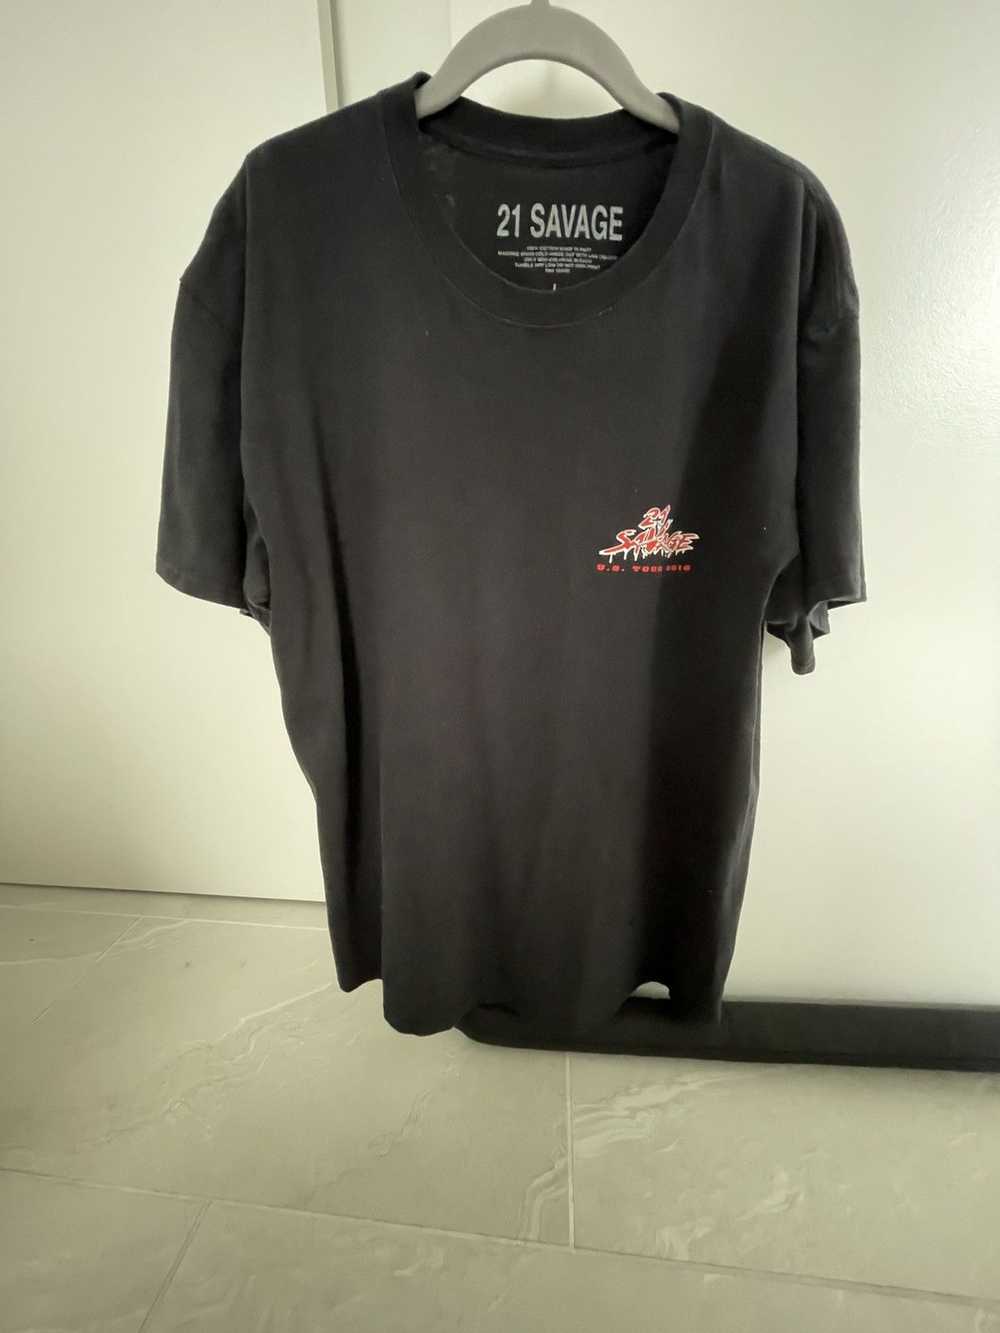 21 Savage 21 Savage 2018 Tour T-Shirt - image 1